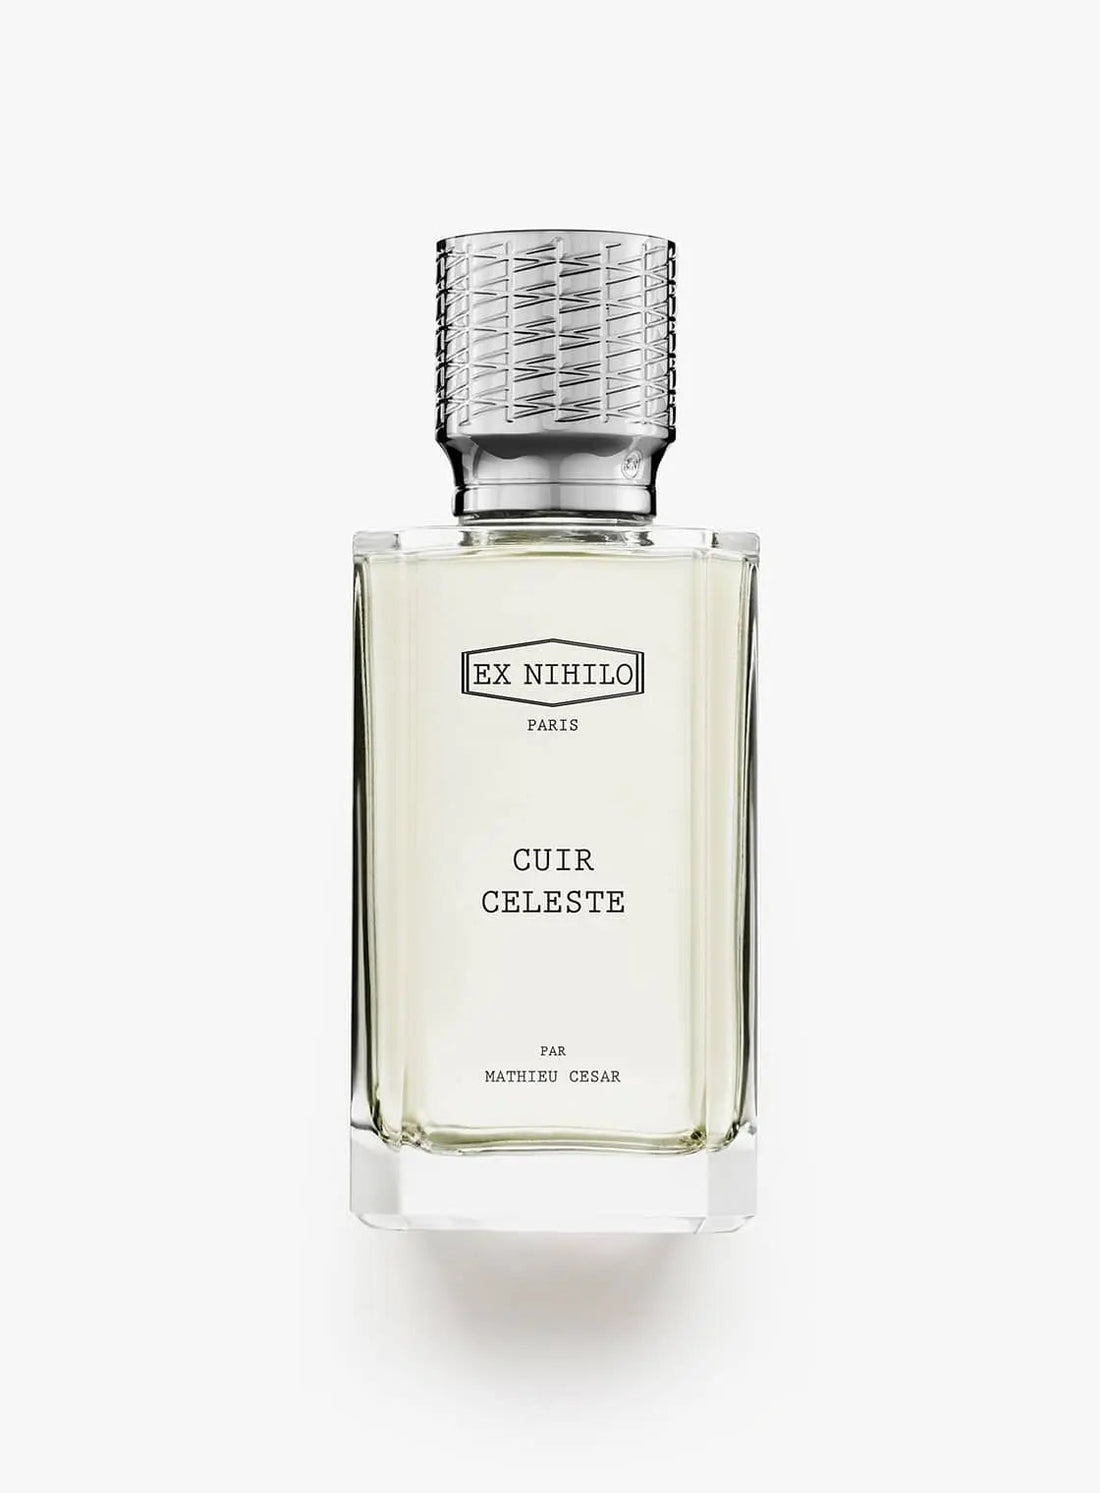 Ex nihilo Cuir Celeste eau de parfum - 100 ml